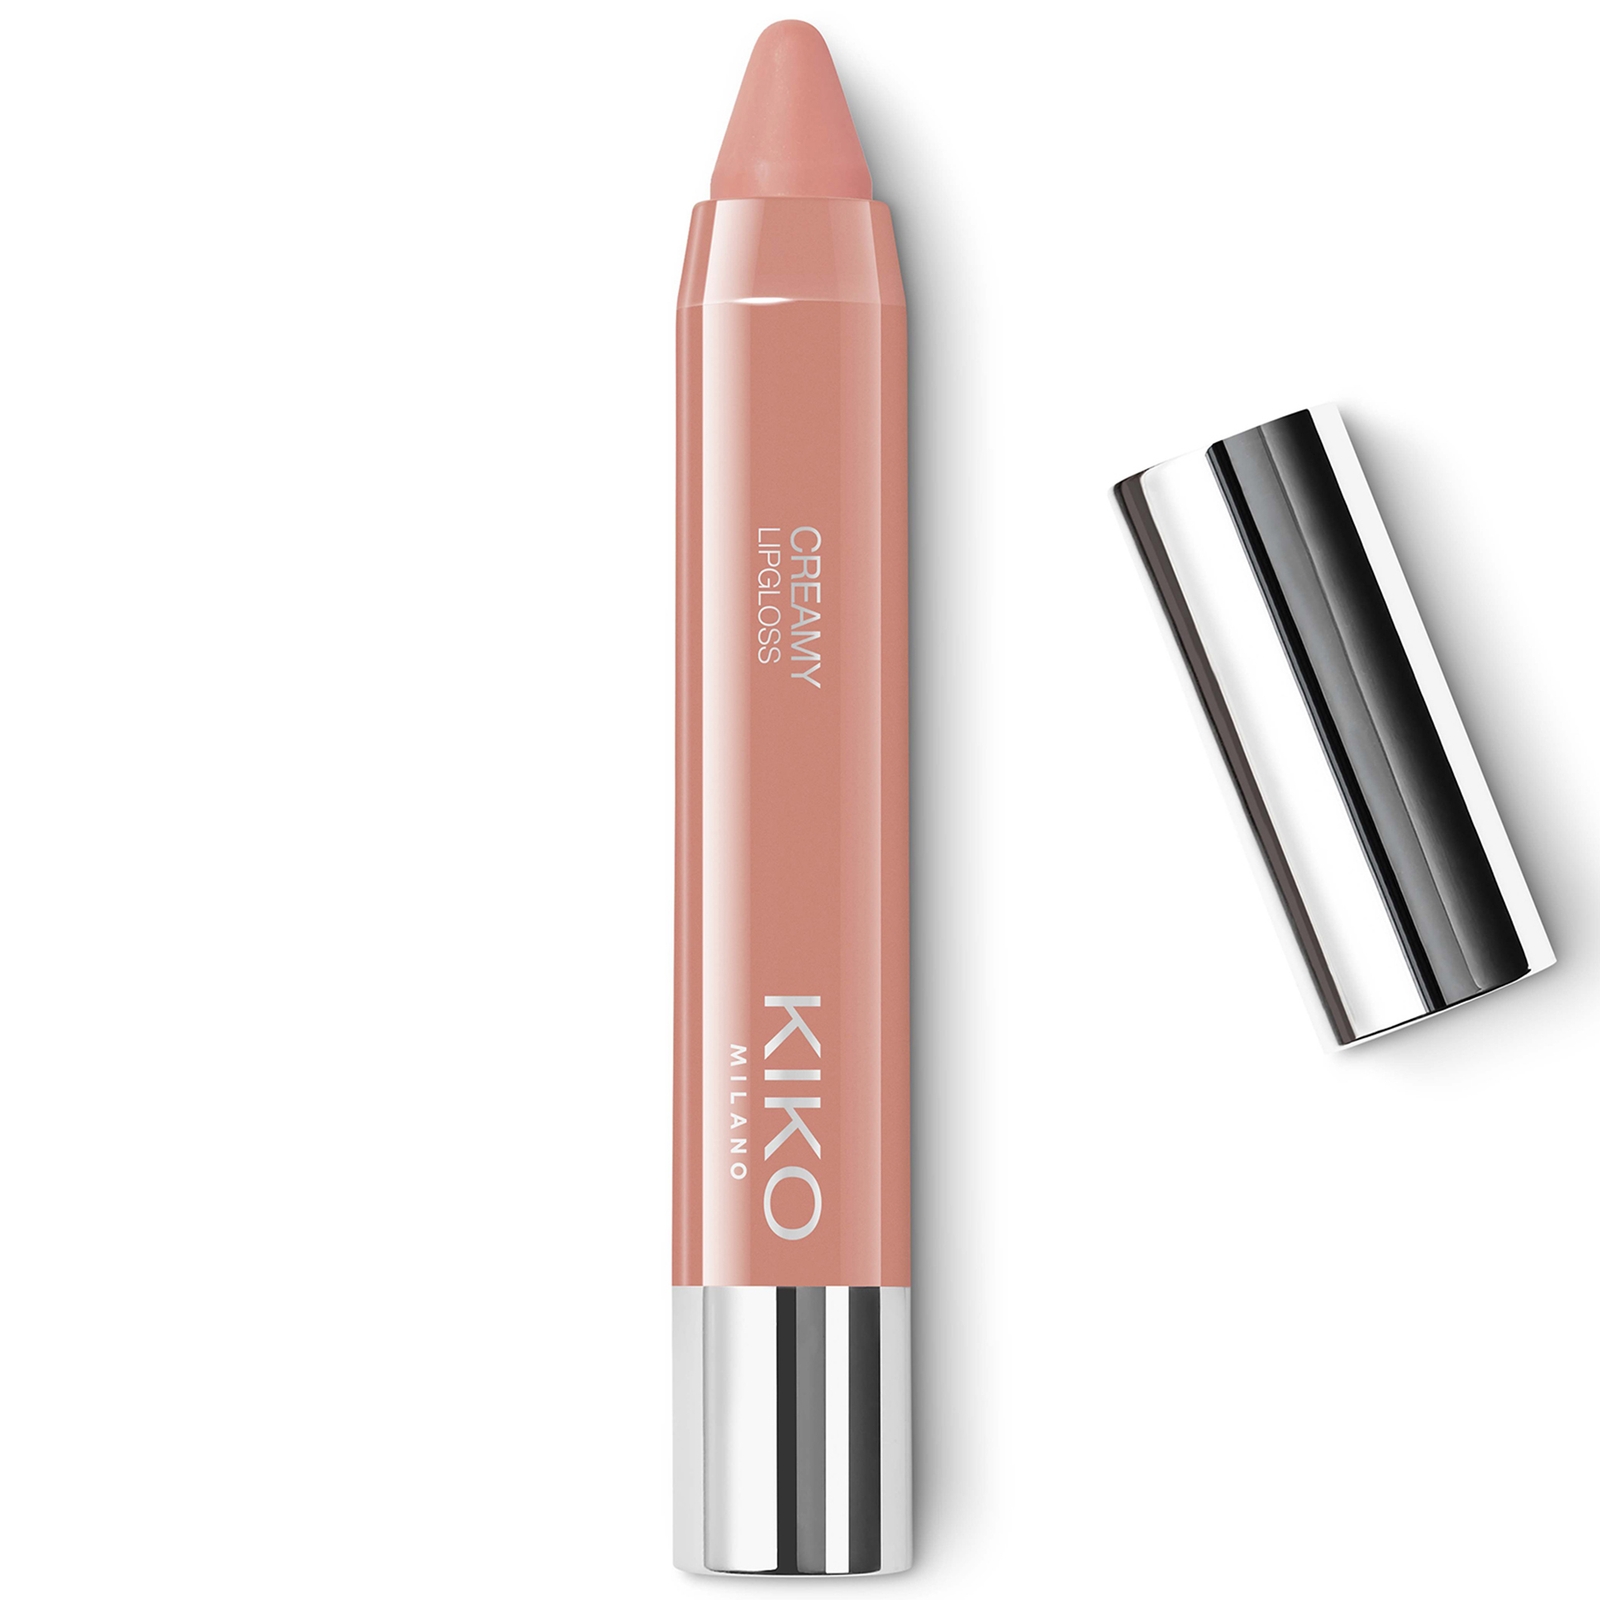 KIKO Milano Creamy Lipgloss 2.8g (Various Shades) - 101 Pearly Shell Rose